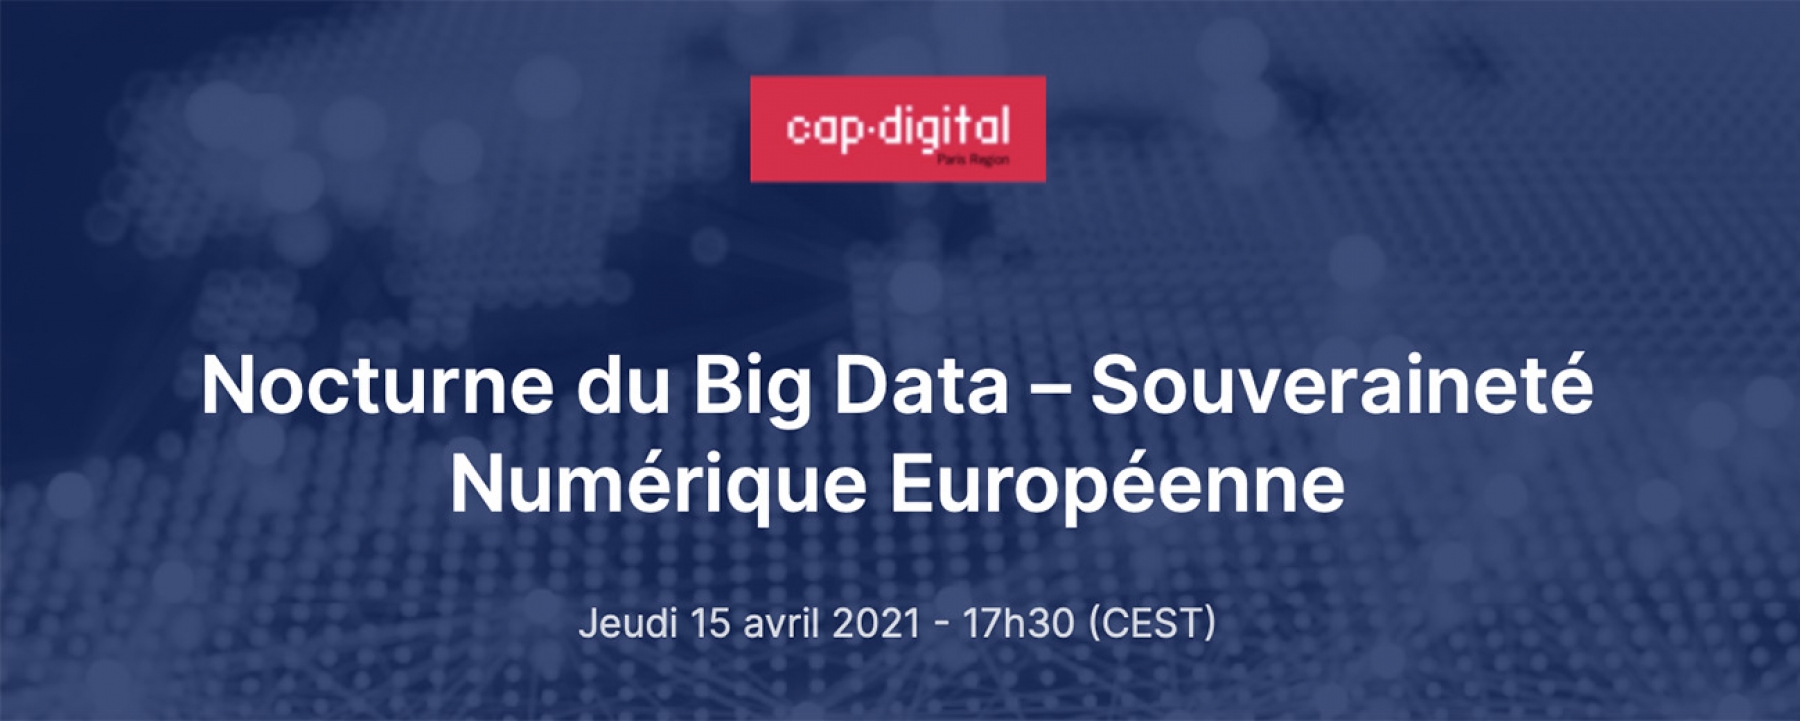 Nocturne du Big Data – Souveraineté Numérique Européenne, organisé par Cap Digital le 14 avril 2021